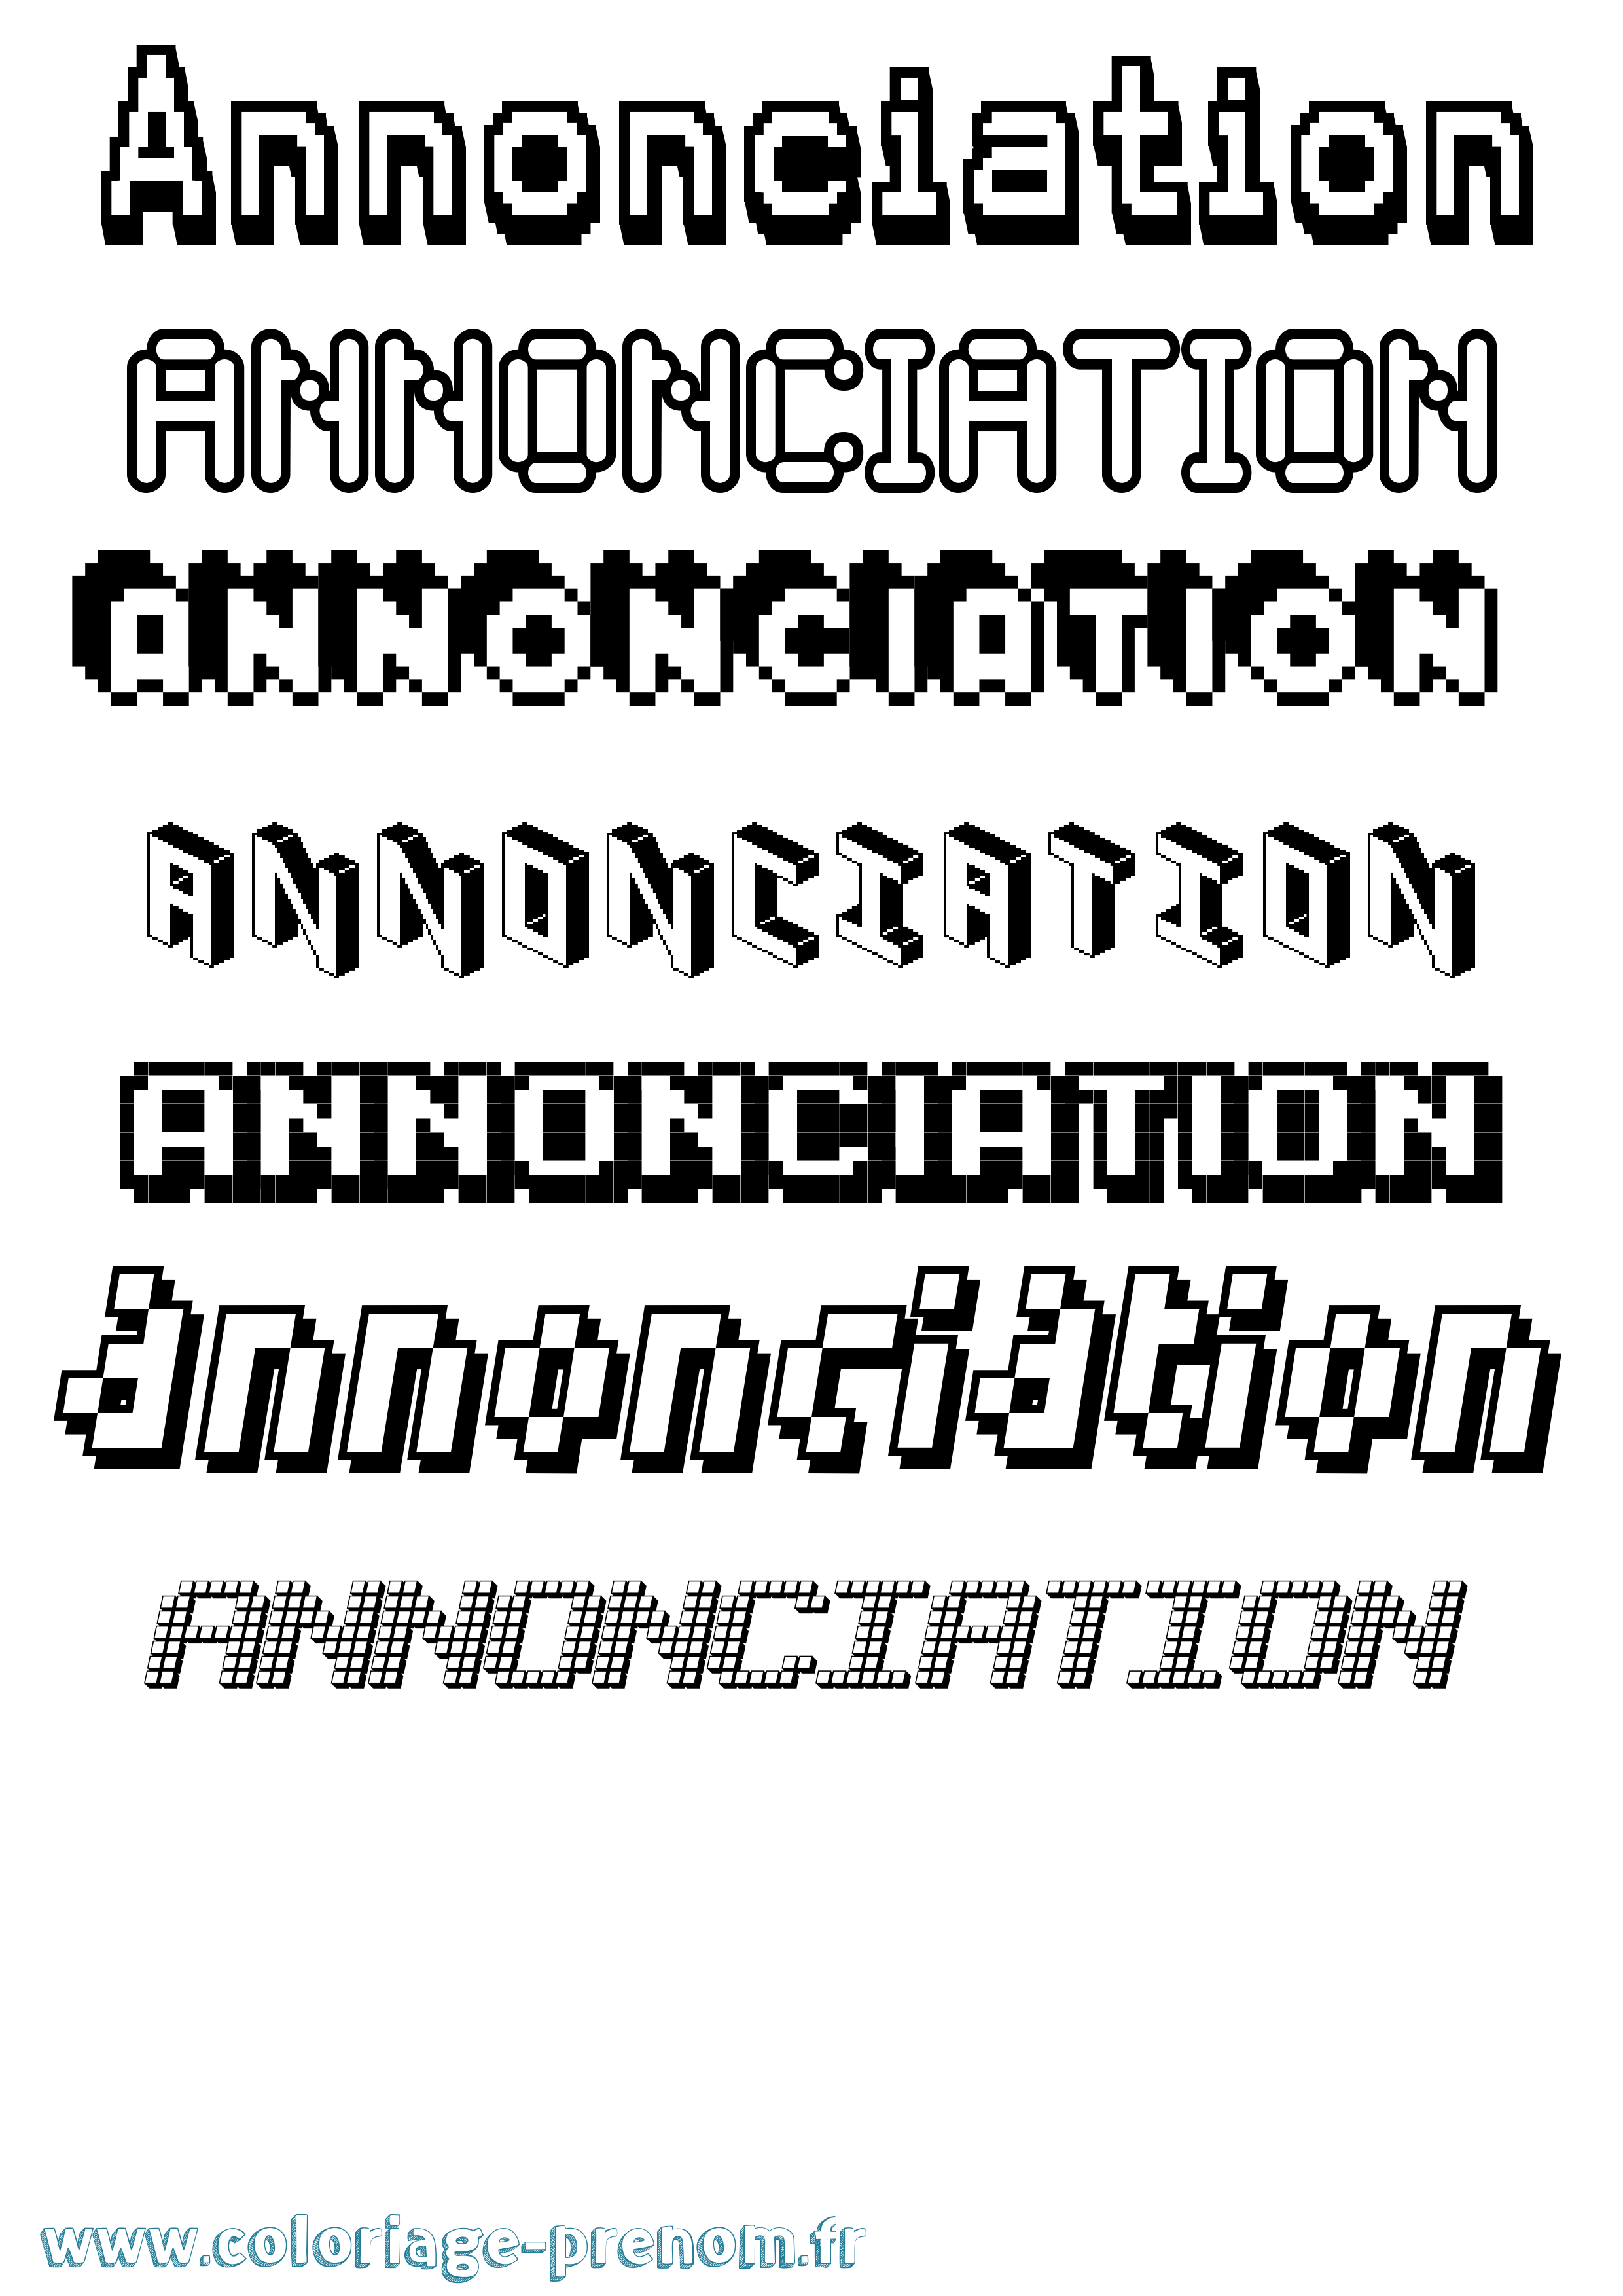 Coloriage prénom Annonciation Pixel